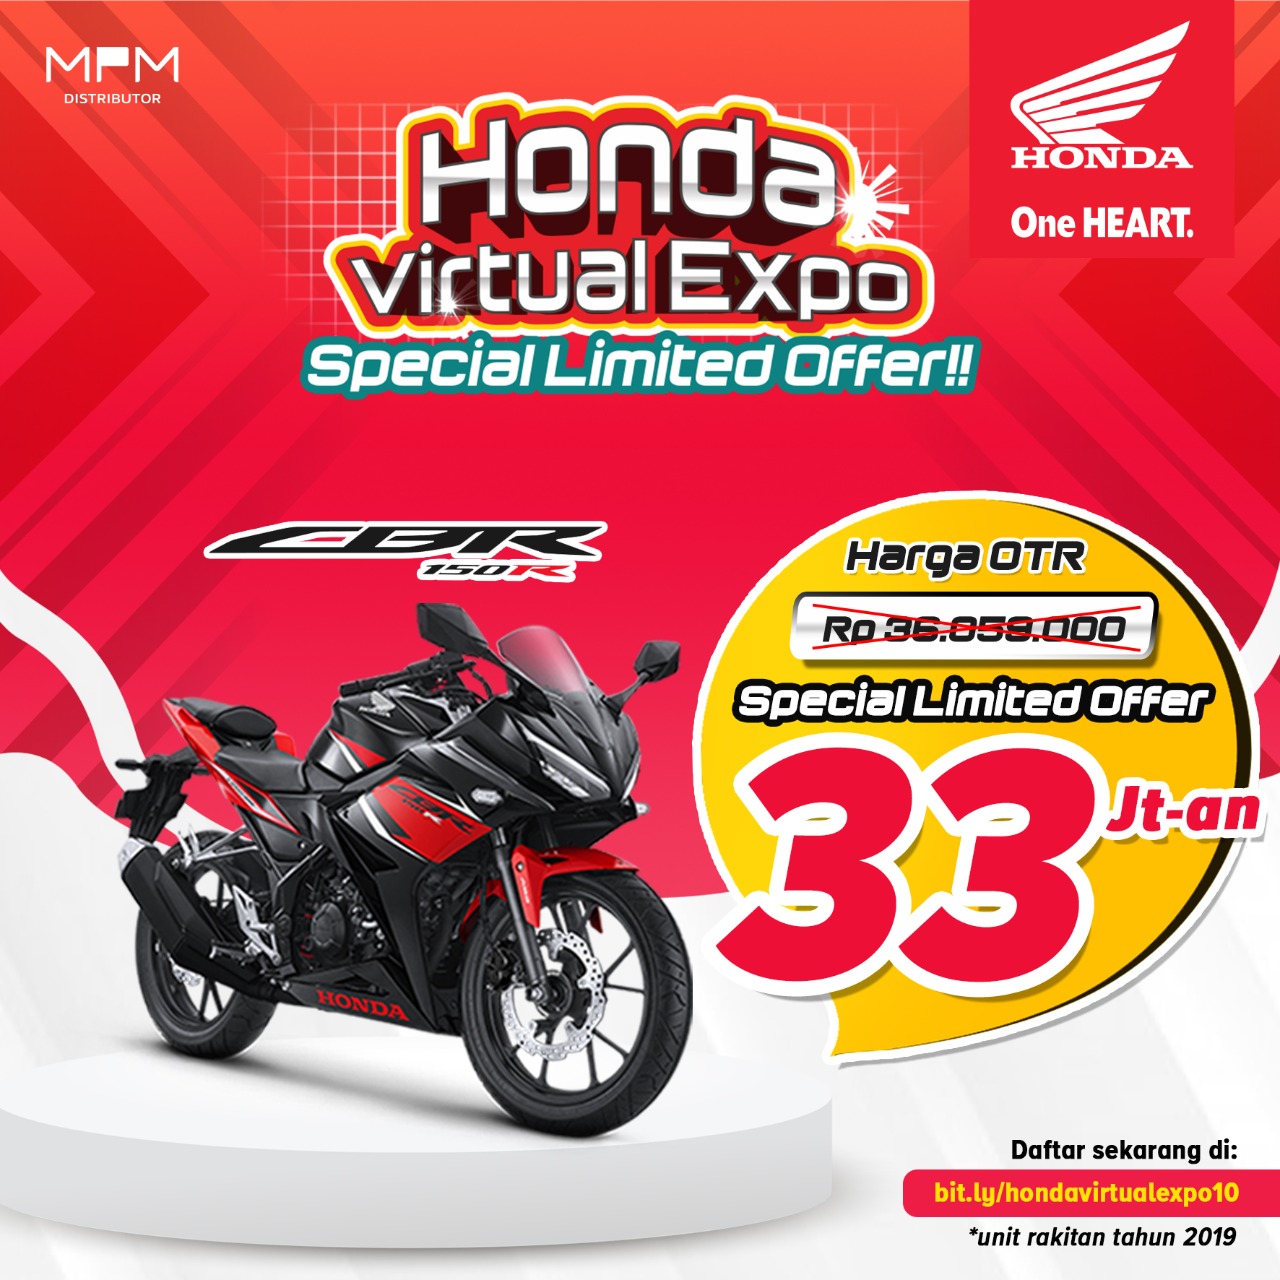 Honda Virtual Expo Special Limited Offer Hadir Kembali, Hanya 3 Hari!